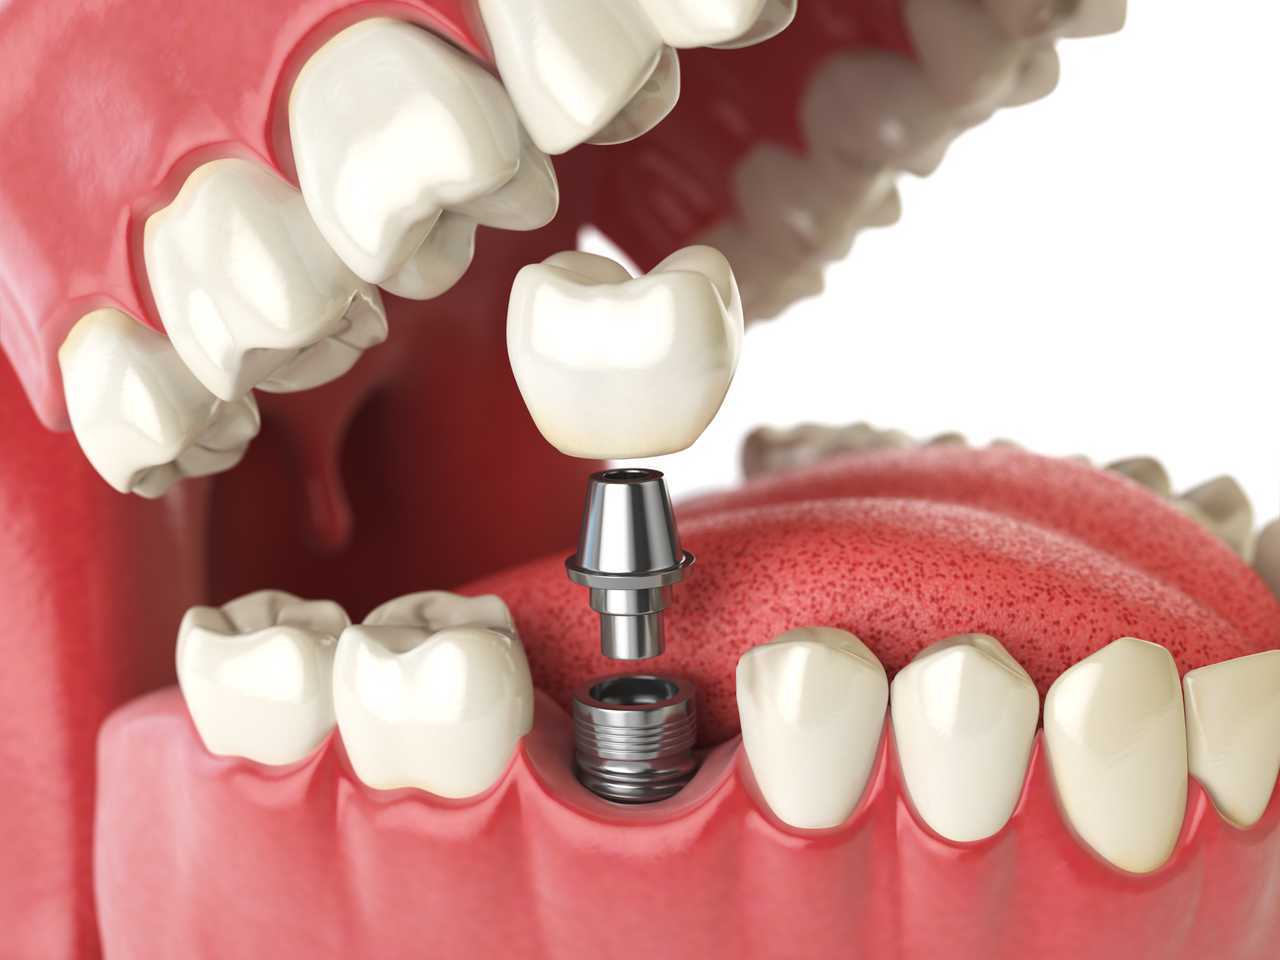 Dental İmplant Cerrahisinde Başarısızlık ve Komplikasyonlar